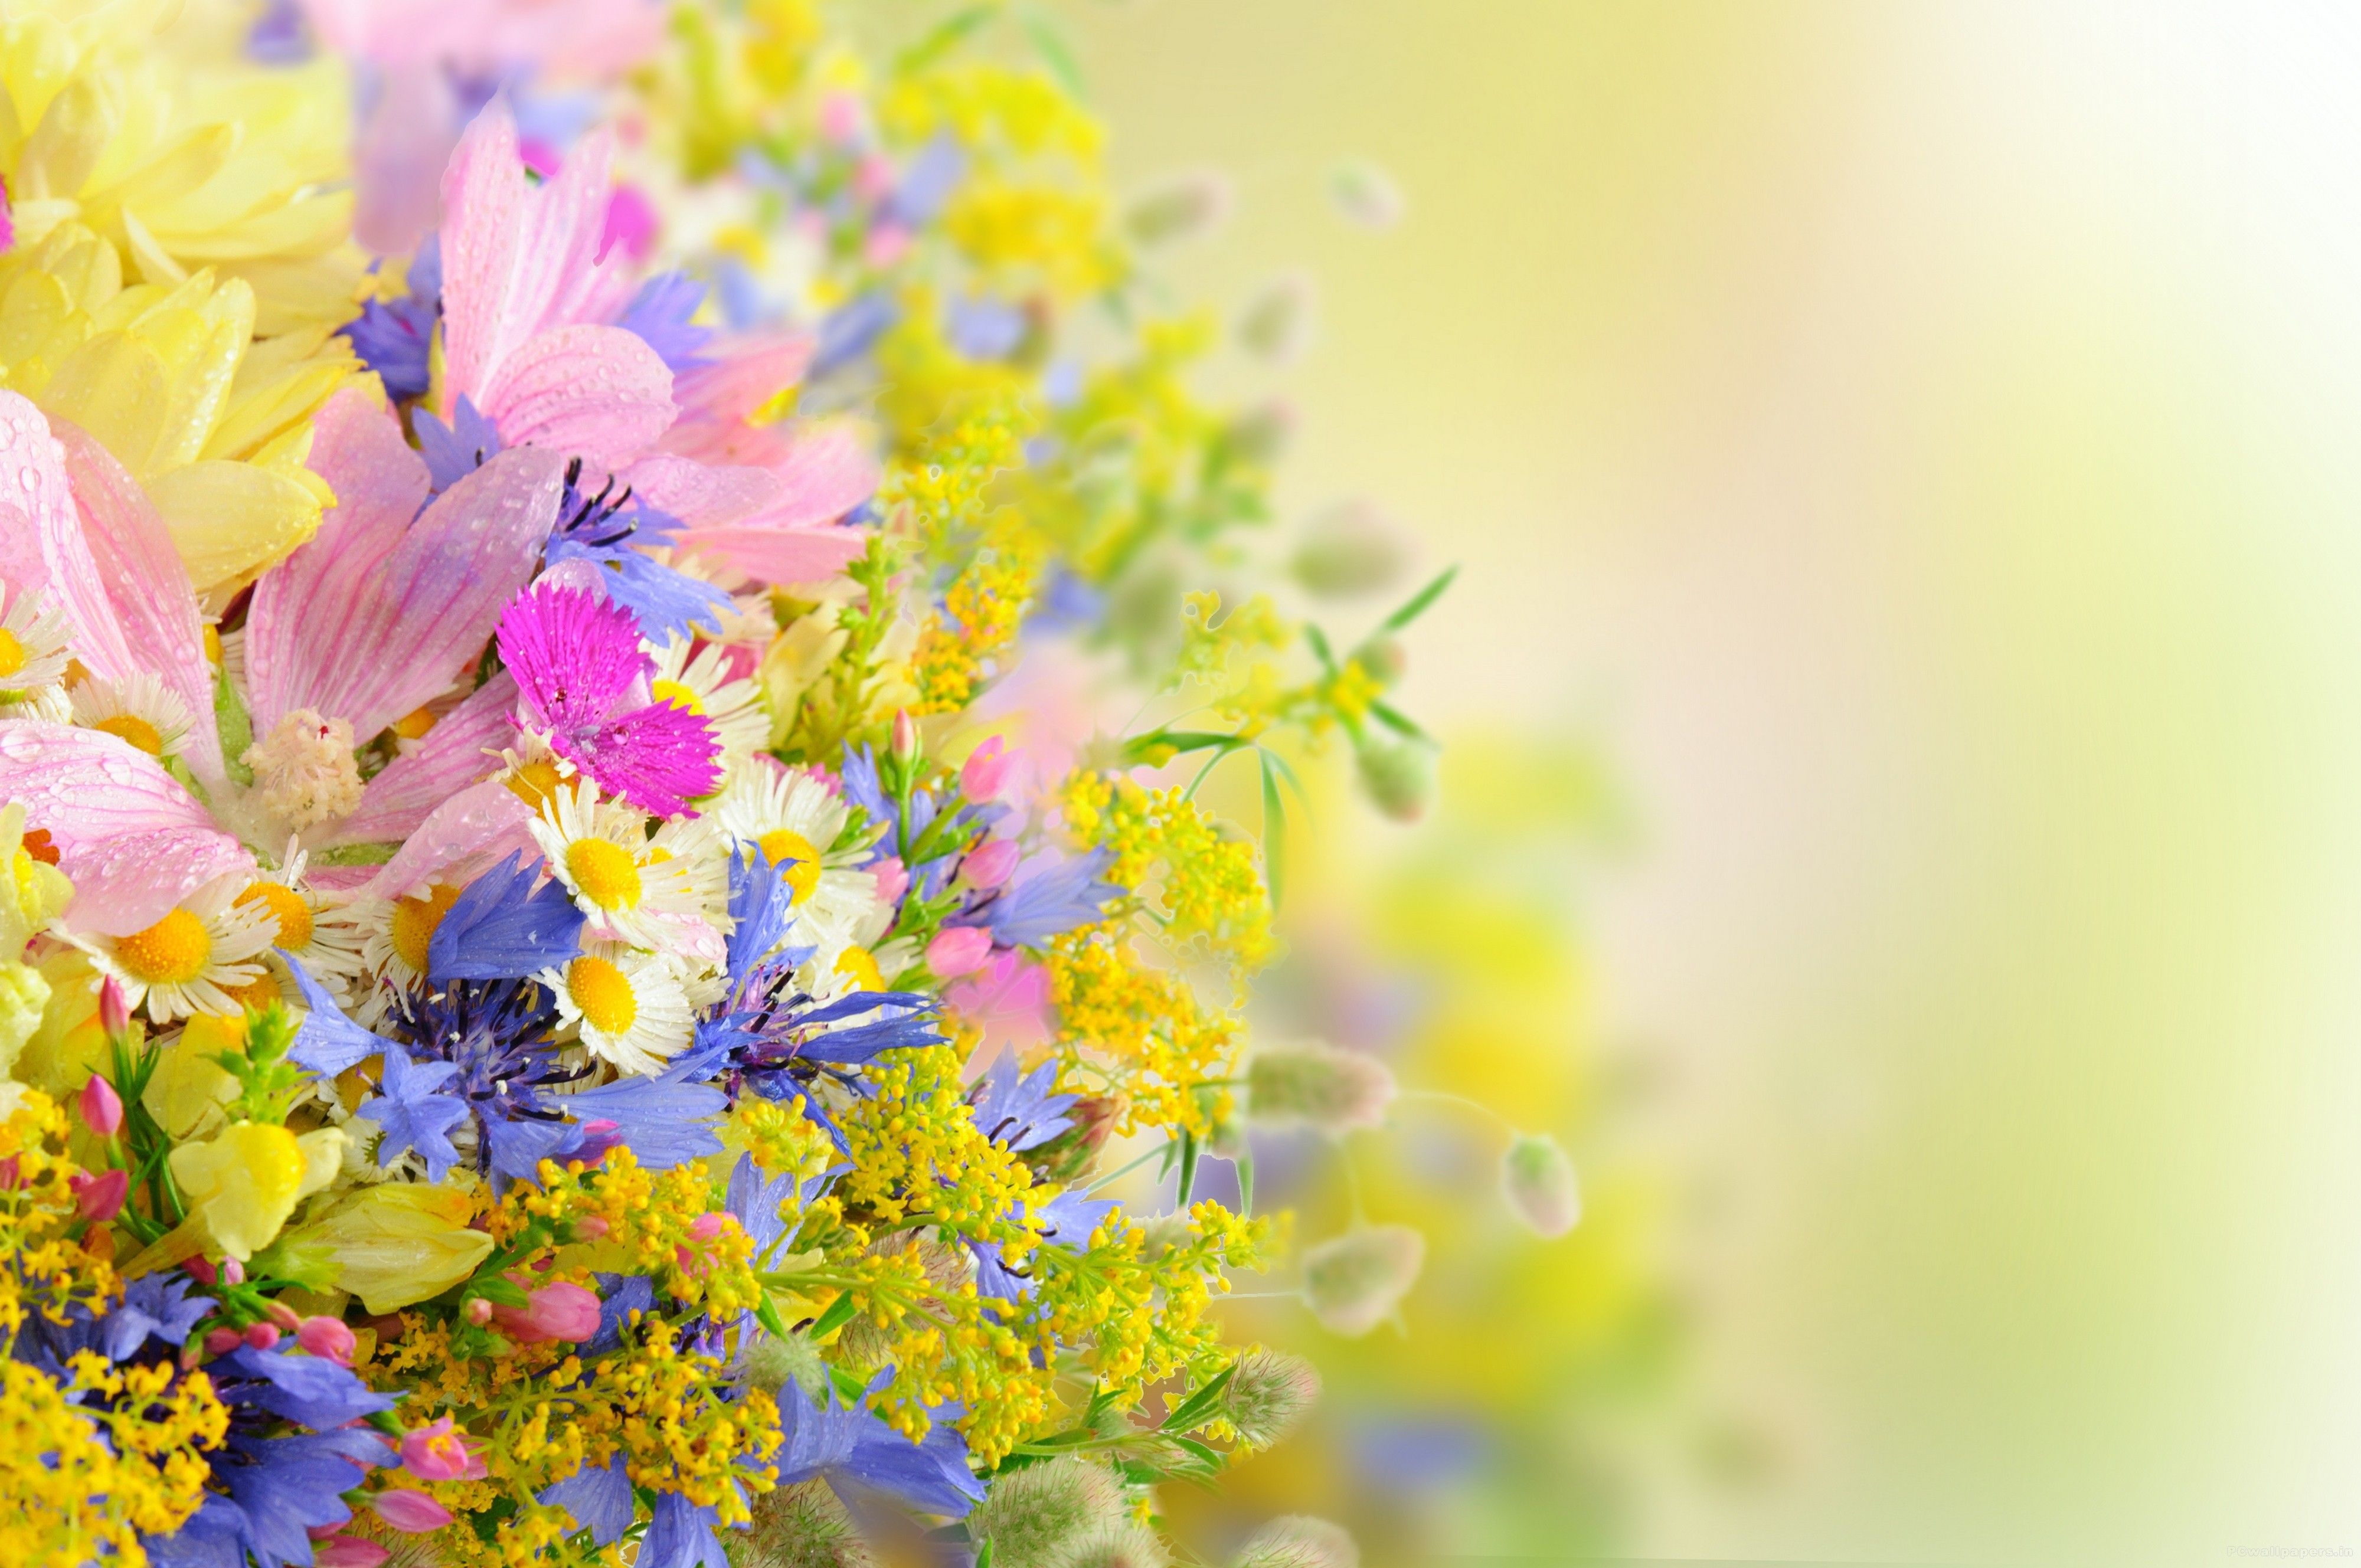 Flower Wallpaper Full HD For Desktop X Px